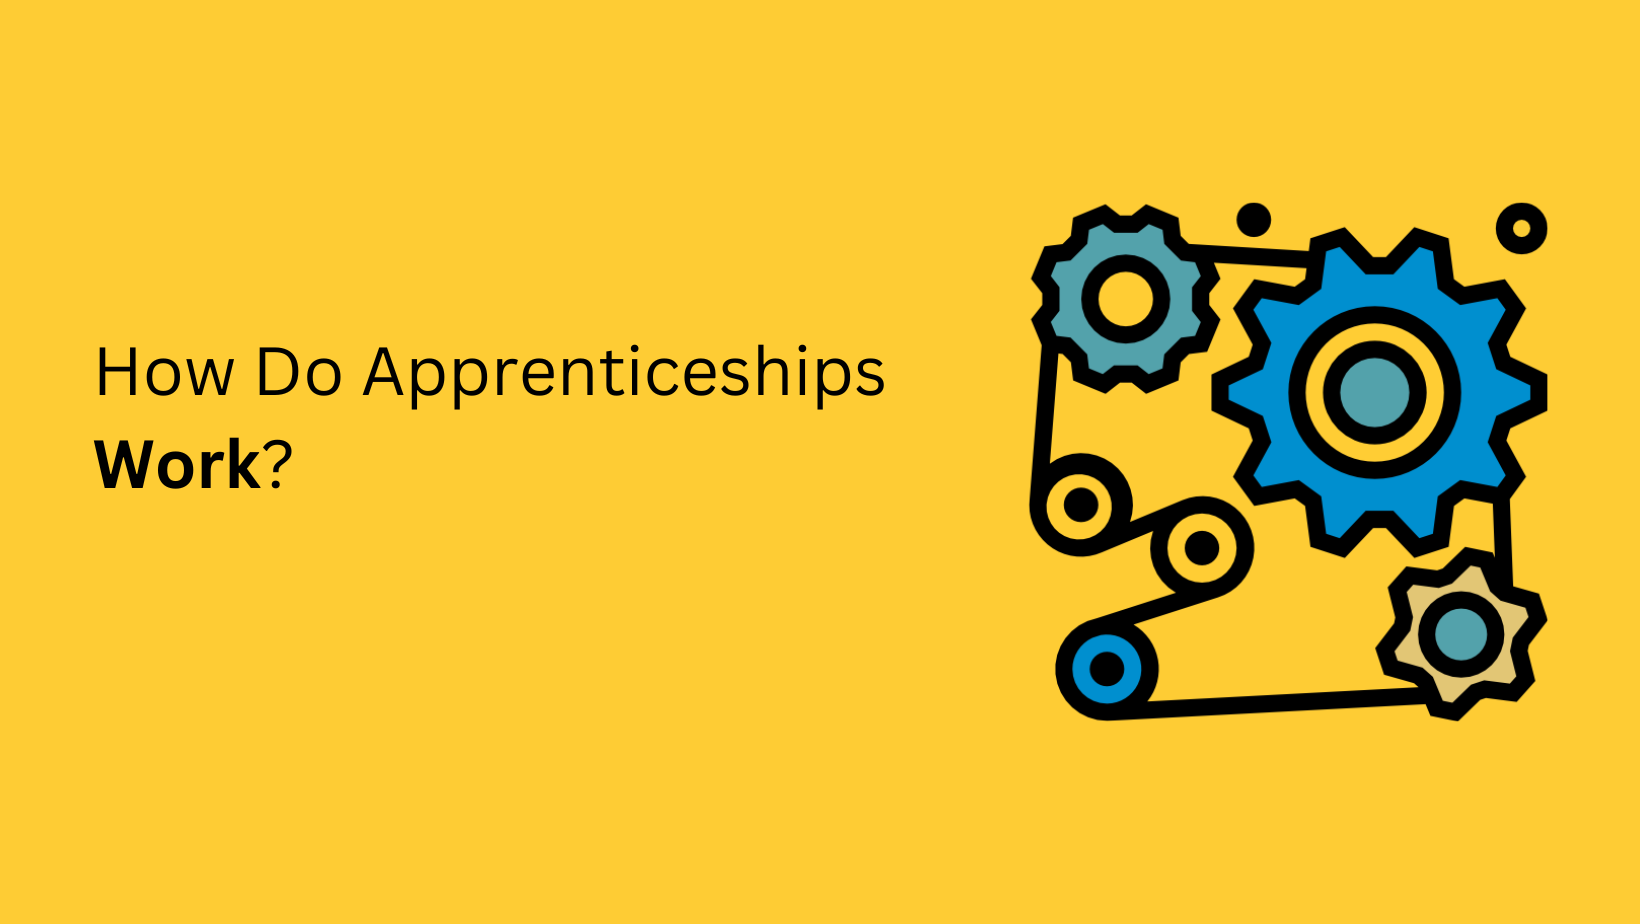 How do Apprenticeships Work